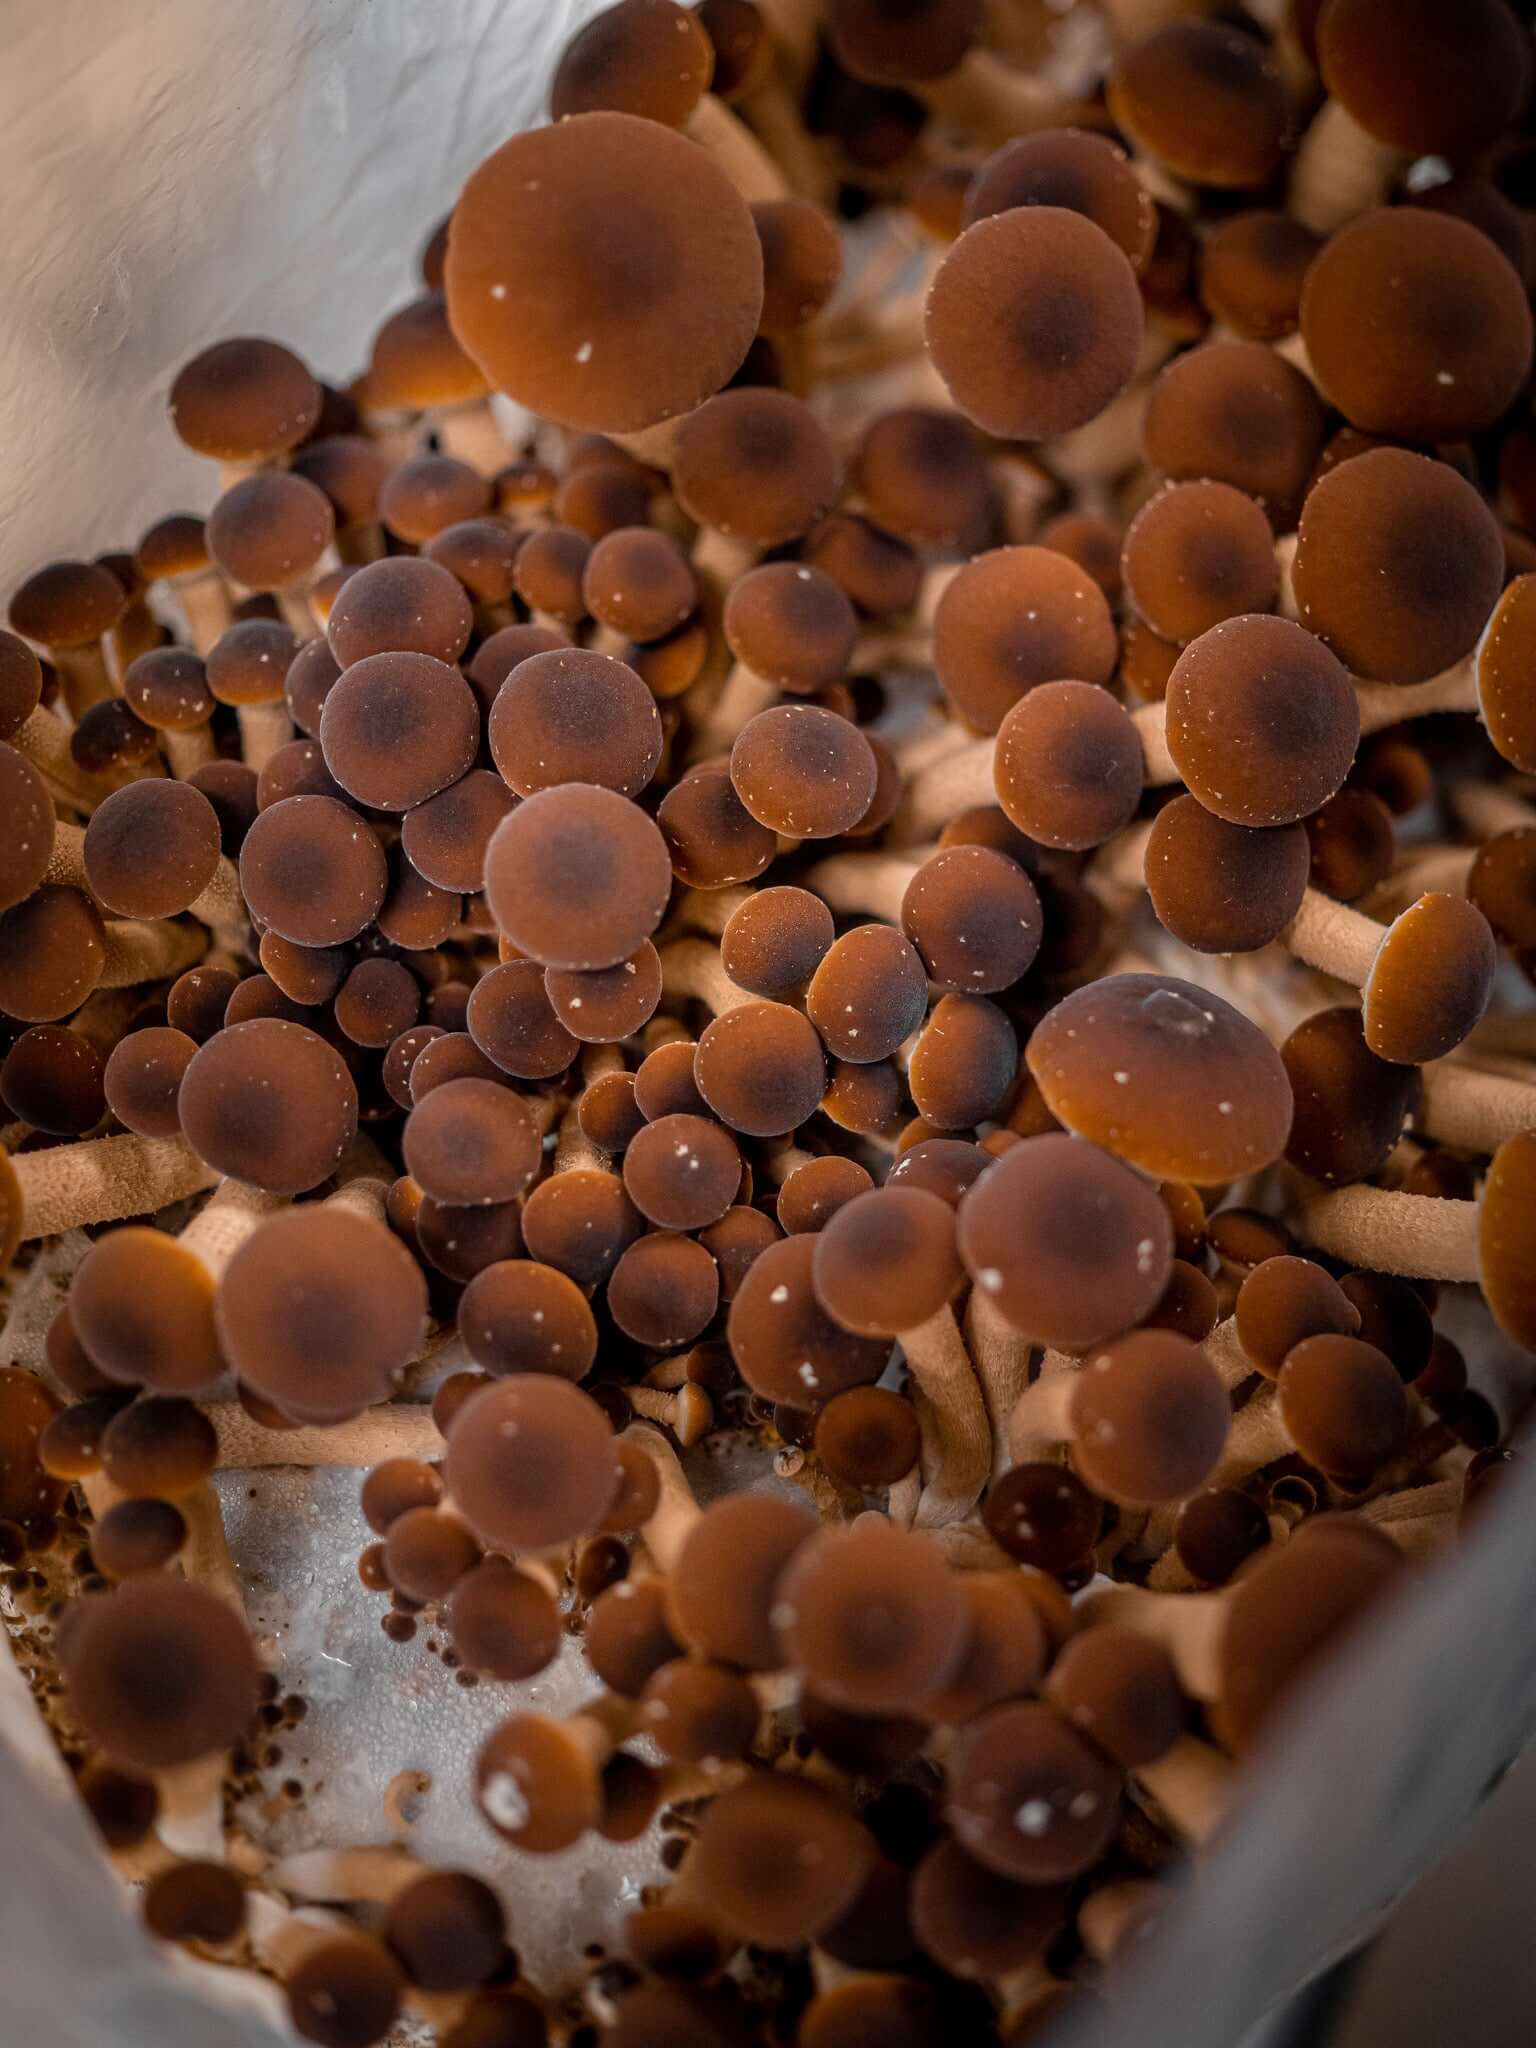 Mushroom Grow Kits – Southwest Mushrooms